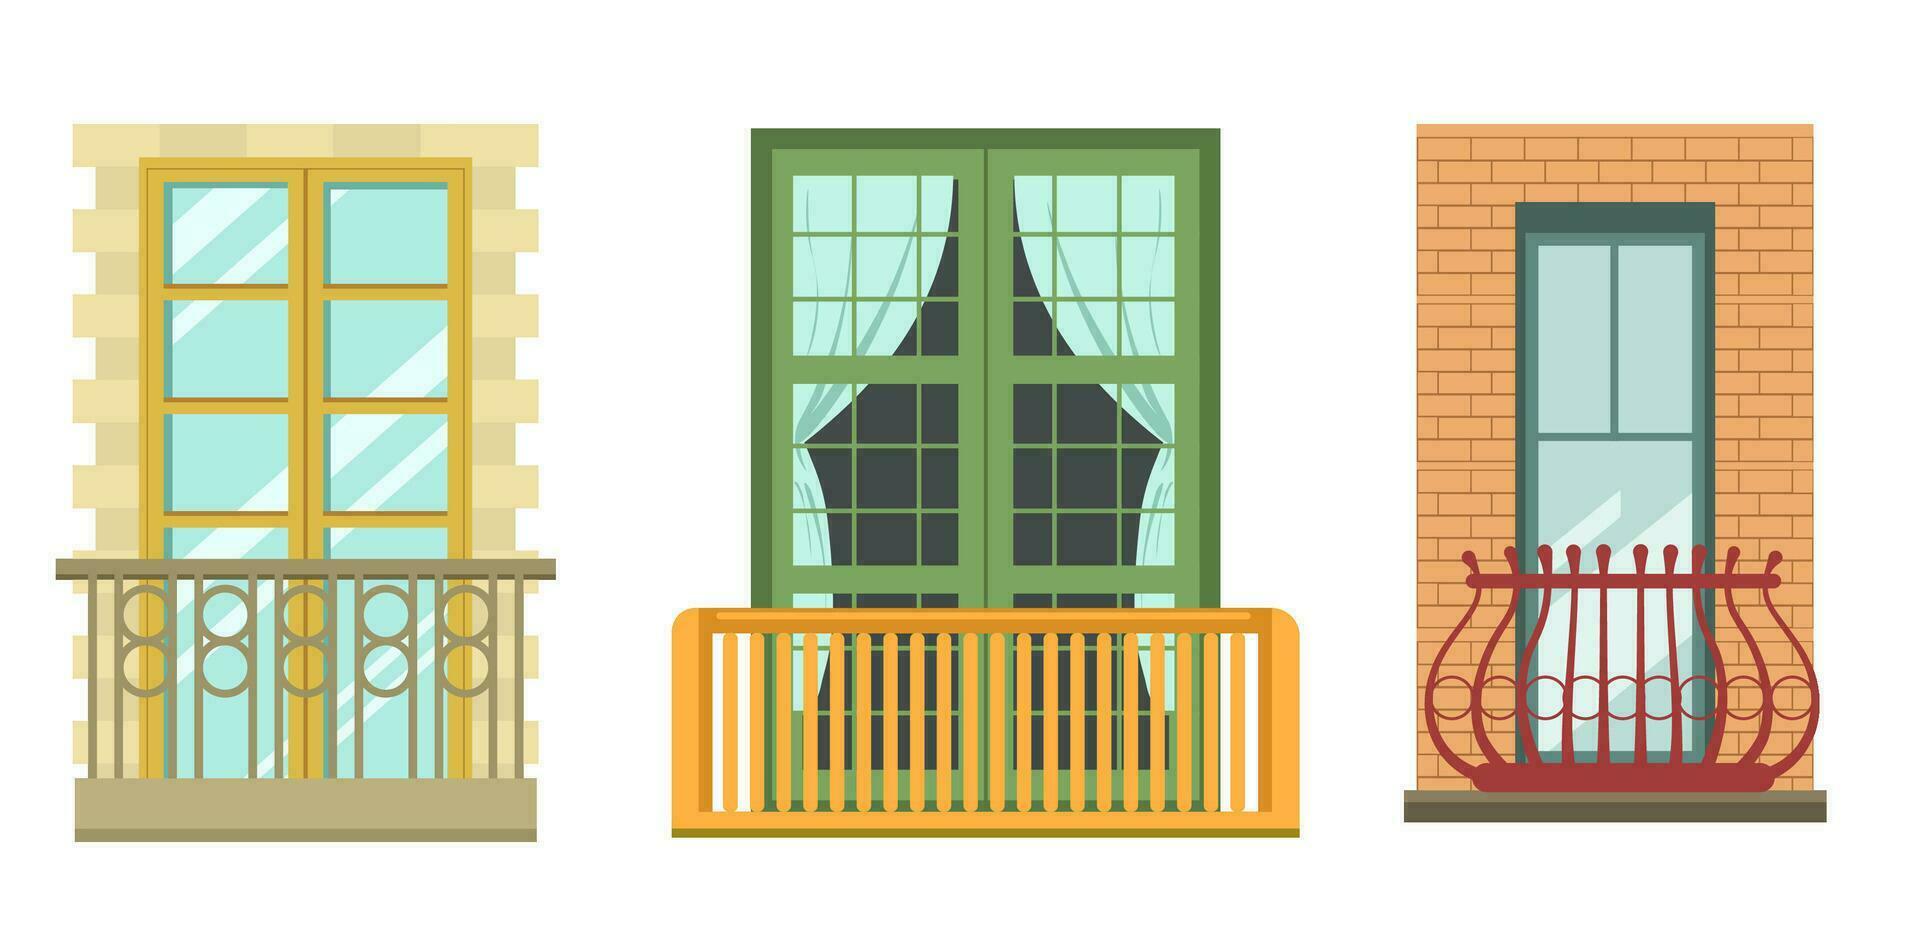 balkons facade elementen, buitenkant van huizen vector